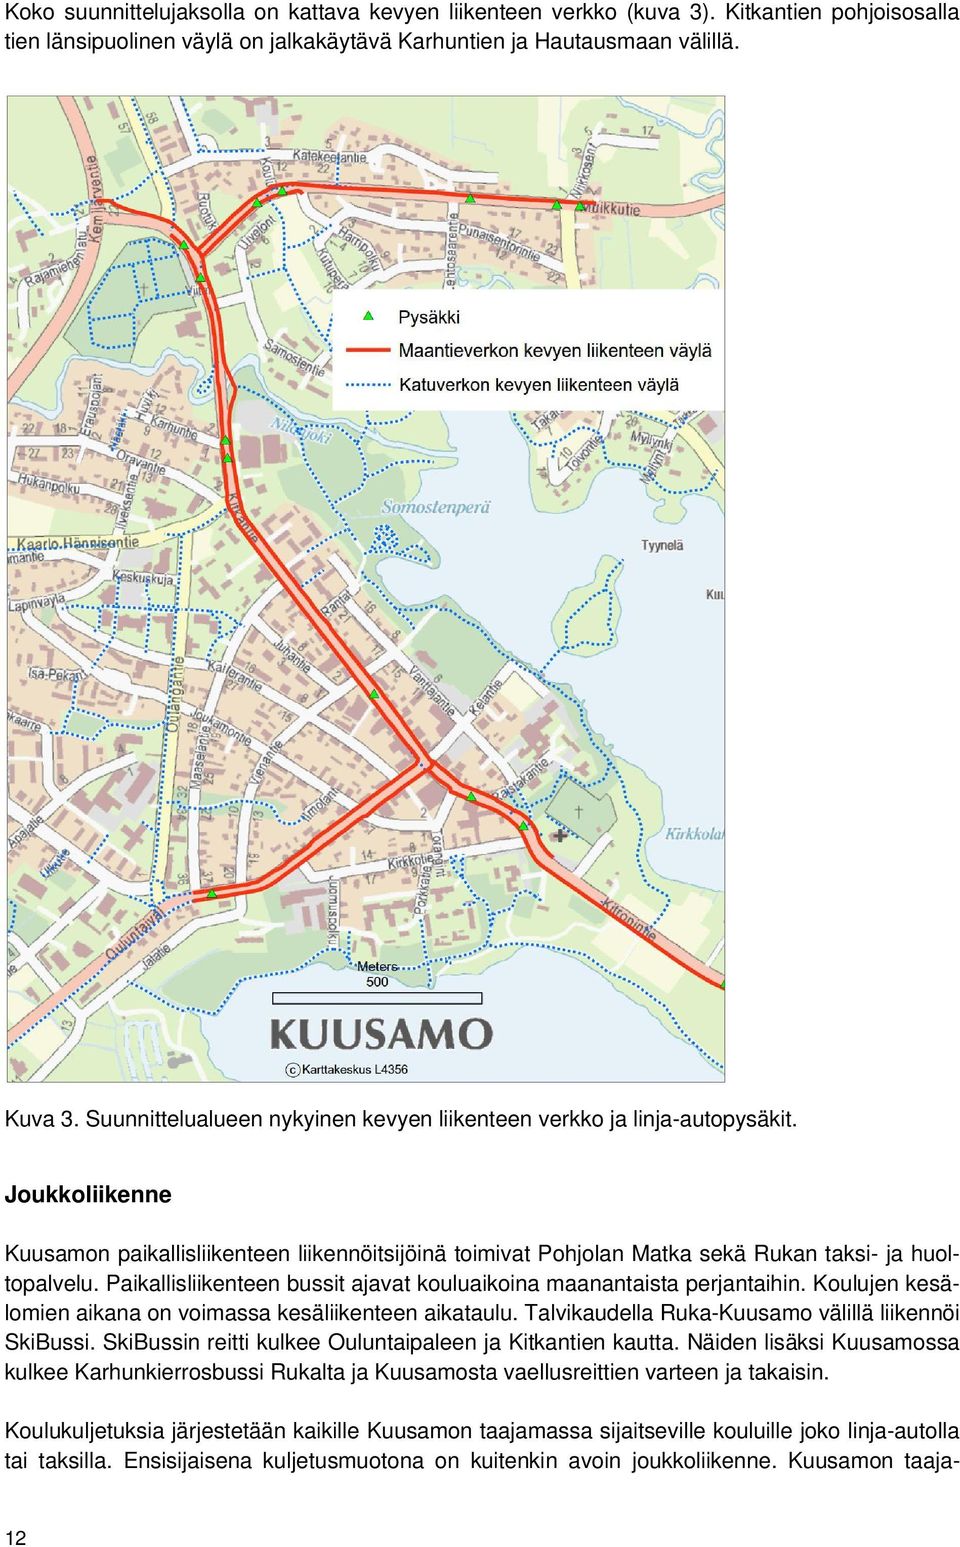 Paikallisliikenteen bussit ajavat kouluaikoina maanantaista perjantaihin. Koulujen kesälomien aikana on voimassa kesäliikenteen aikataulu. Talvikaudella Ruka-Kuusamo välillä liikennöi SkiBussi.